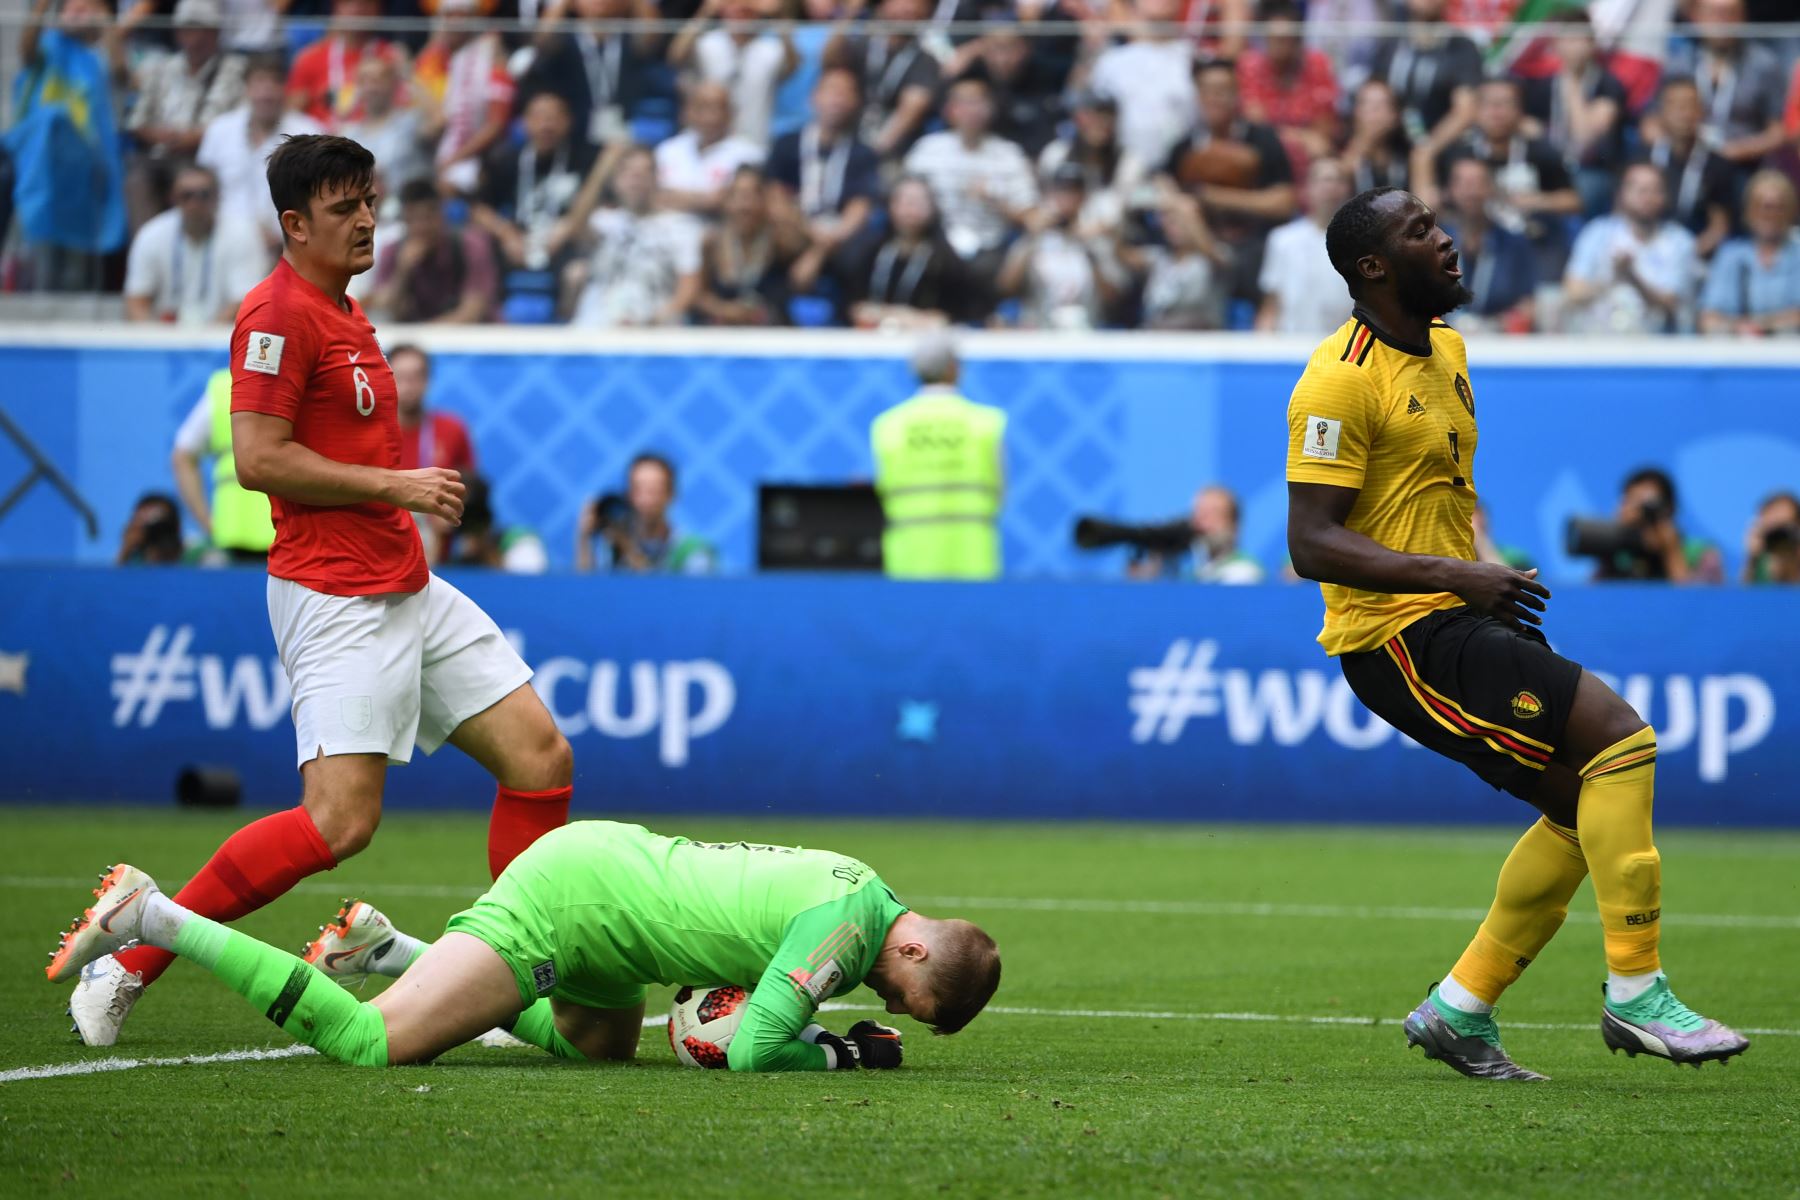 El portero de Inglaterra Jordan Pickford (C) hace un salvamento cuando el alero belga Romelu Lukaku (R) y el defensa de Inglaterra Harry Maguire reaccionan durante el partido por la Copa Mundial 2018 Rusia por el tercer partido de fútbol entre Bélgica e Inglaterra en el estadio de San Petersburgo en San Petersburgo el 14 de julio de 2018. / AFP